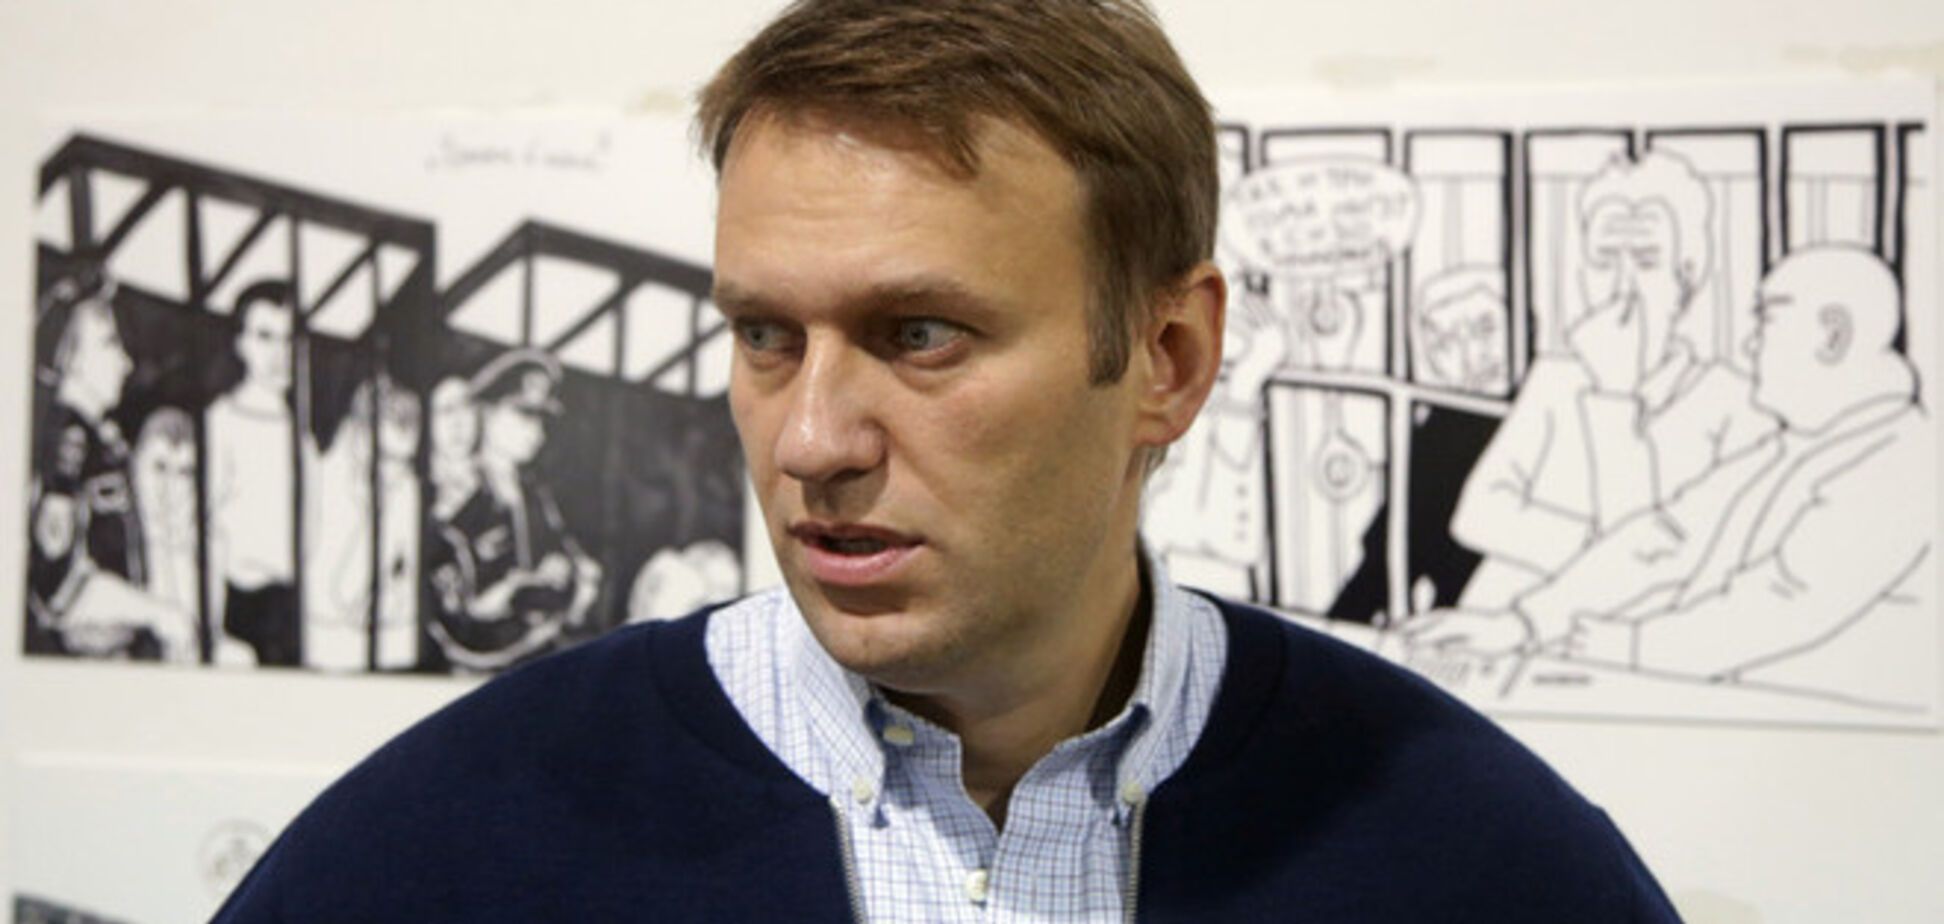 Навальный: войну с Украиной я ни в коем случае не поддержу. С кем нам тогда дружить-то?